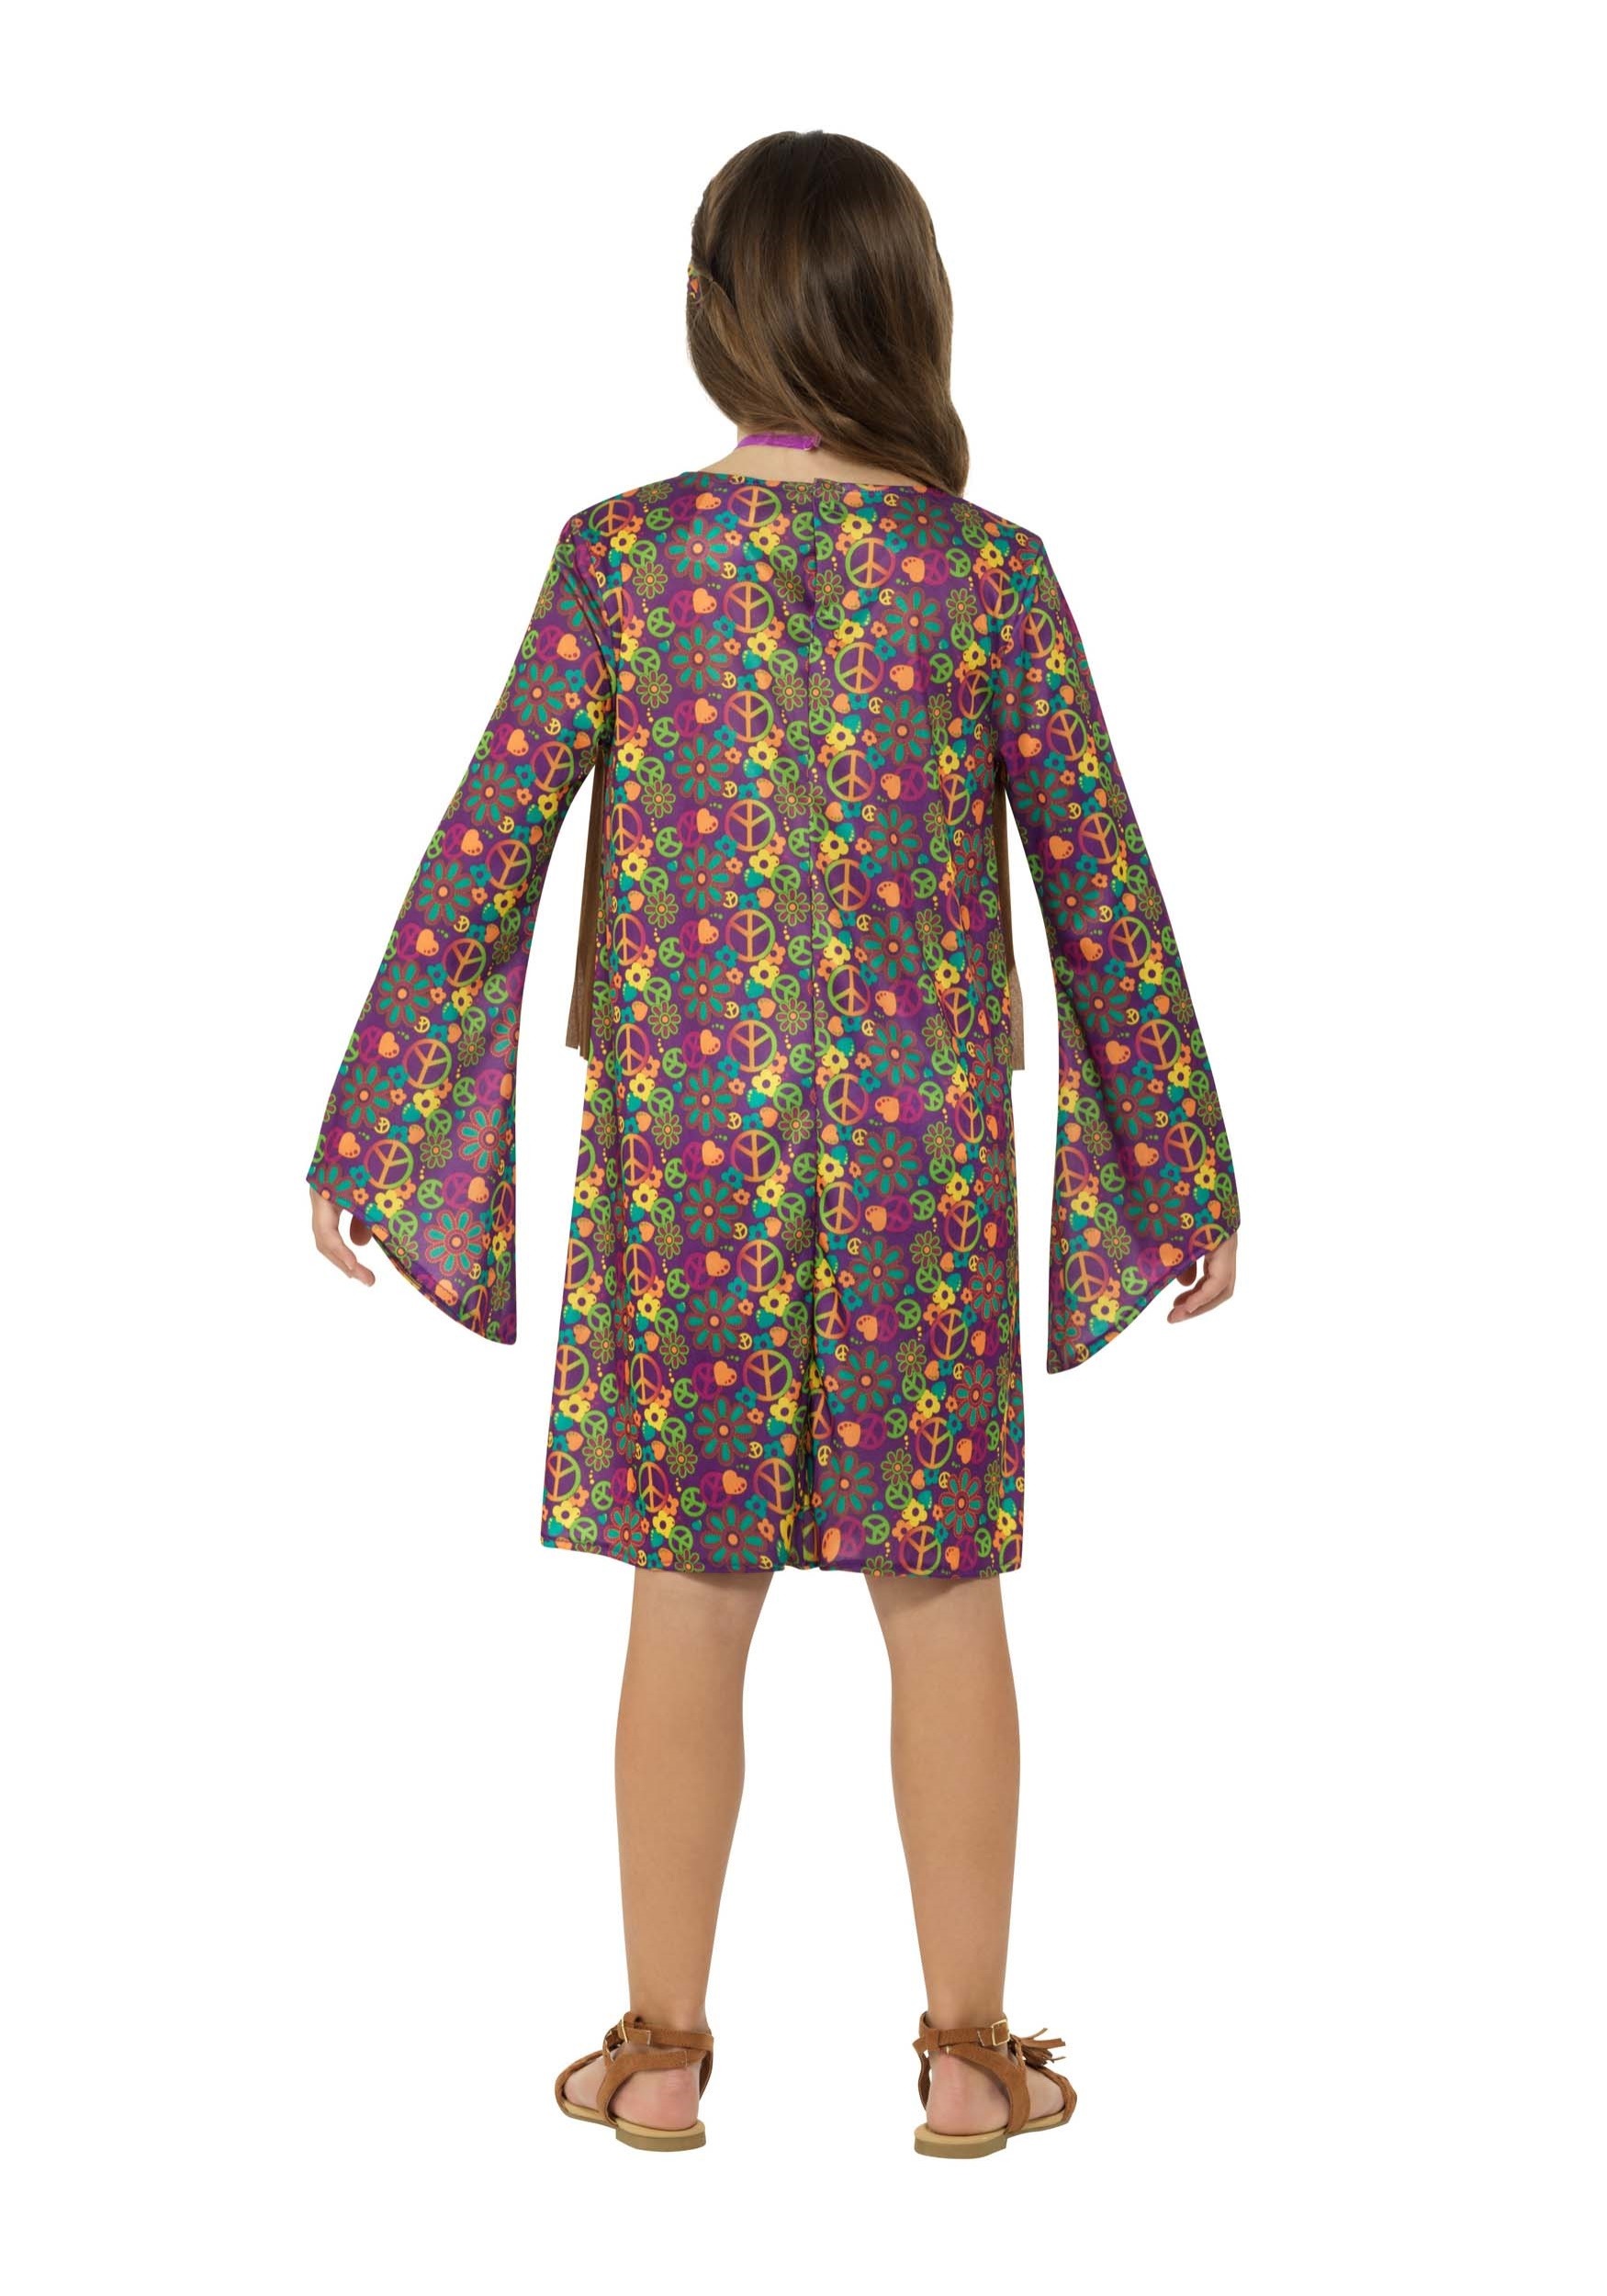 Hippie Girl's Fancy Dress Costume